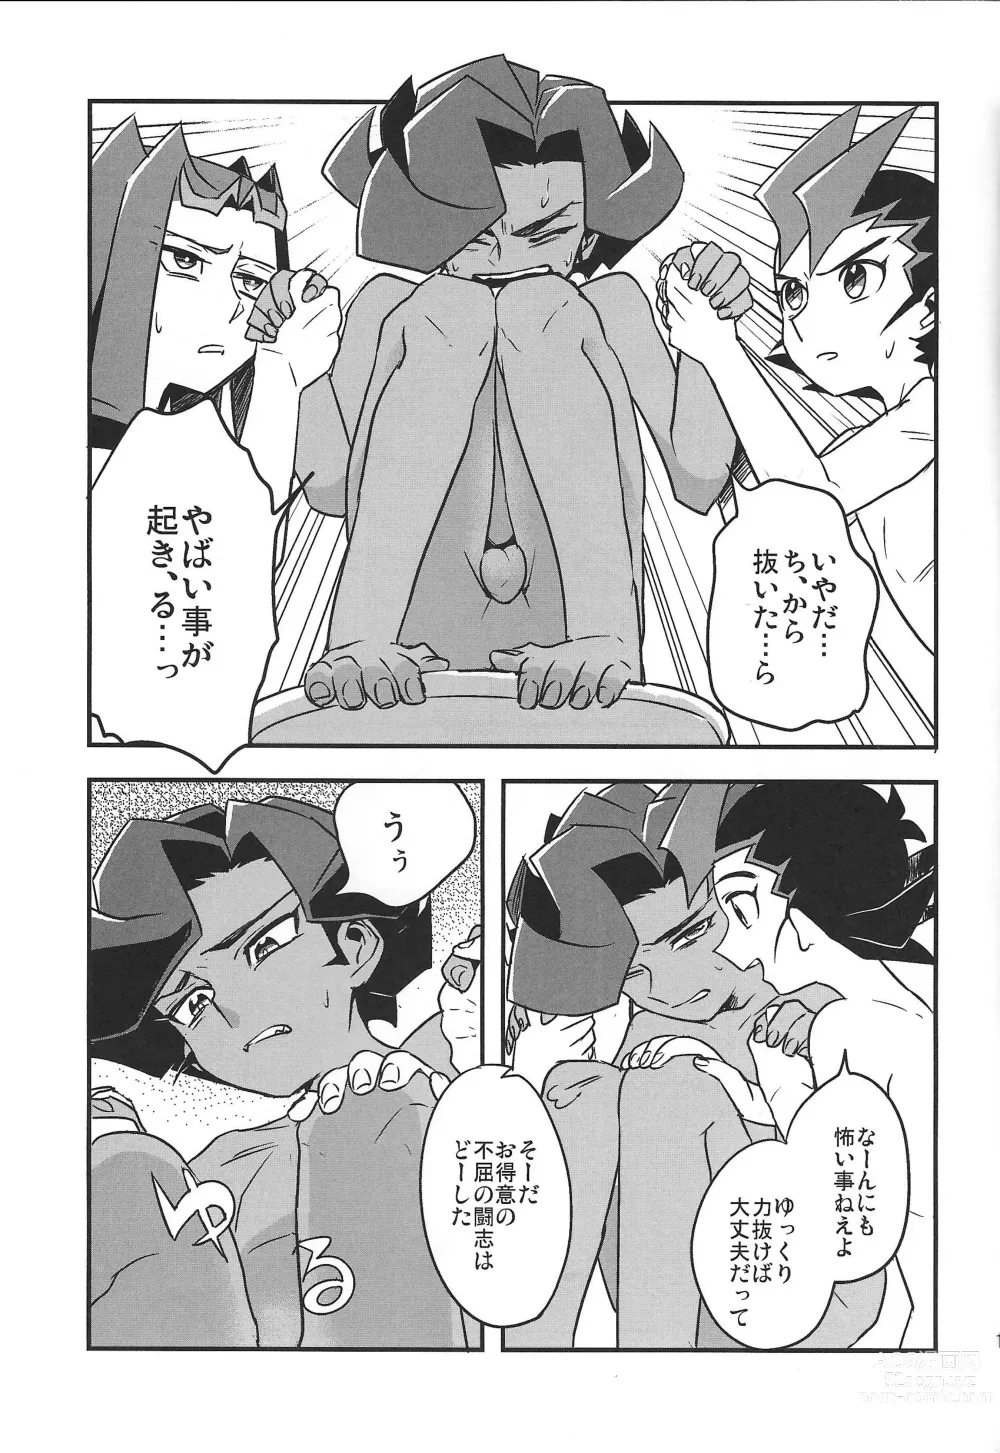 Page 15 of doujinshi Showa x Showa